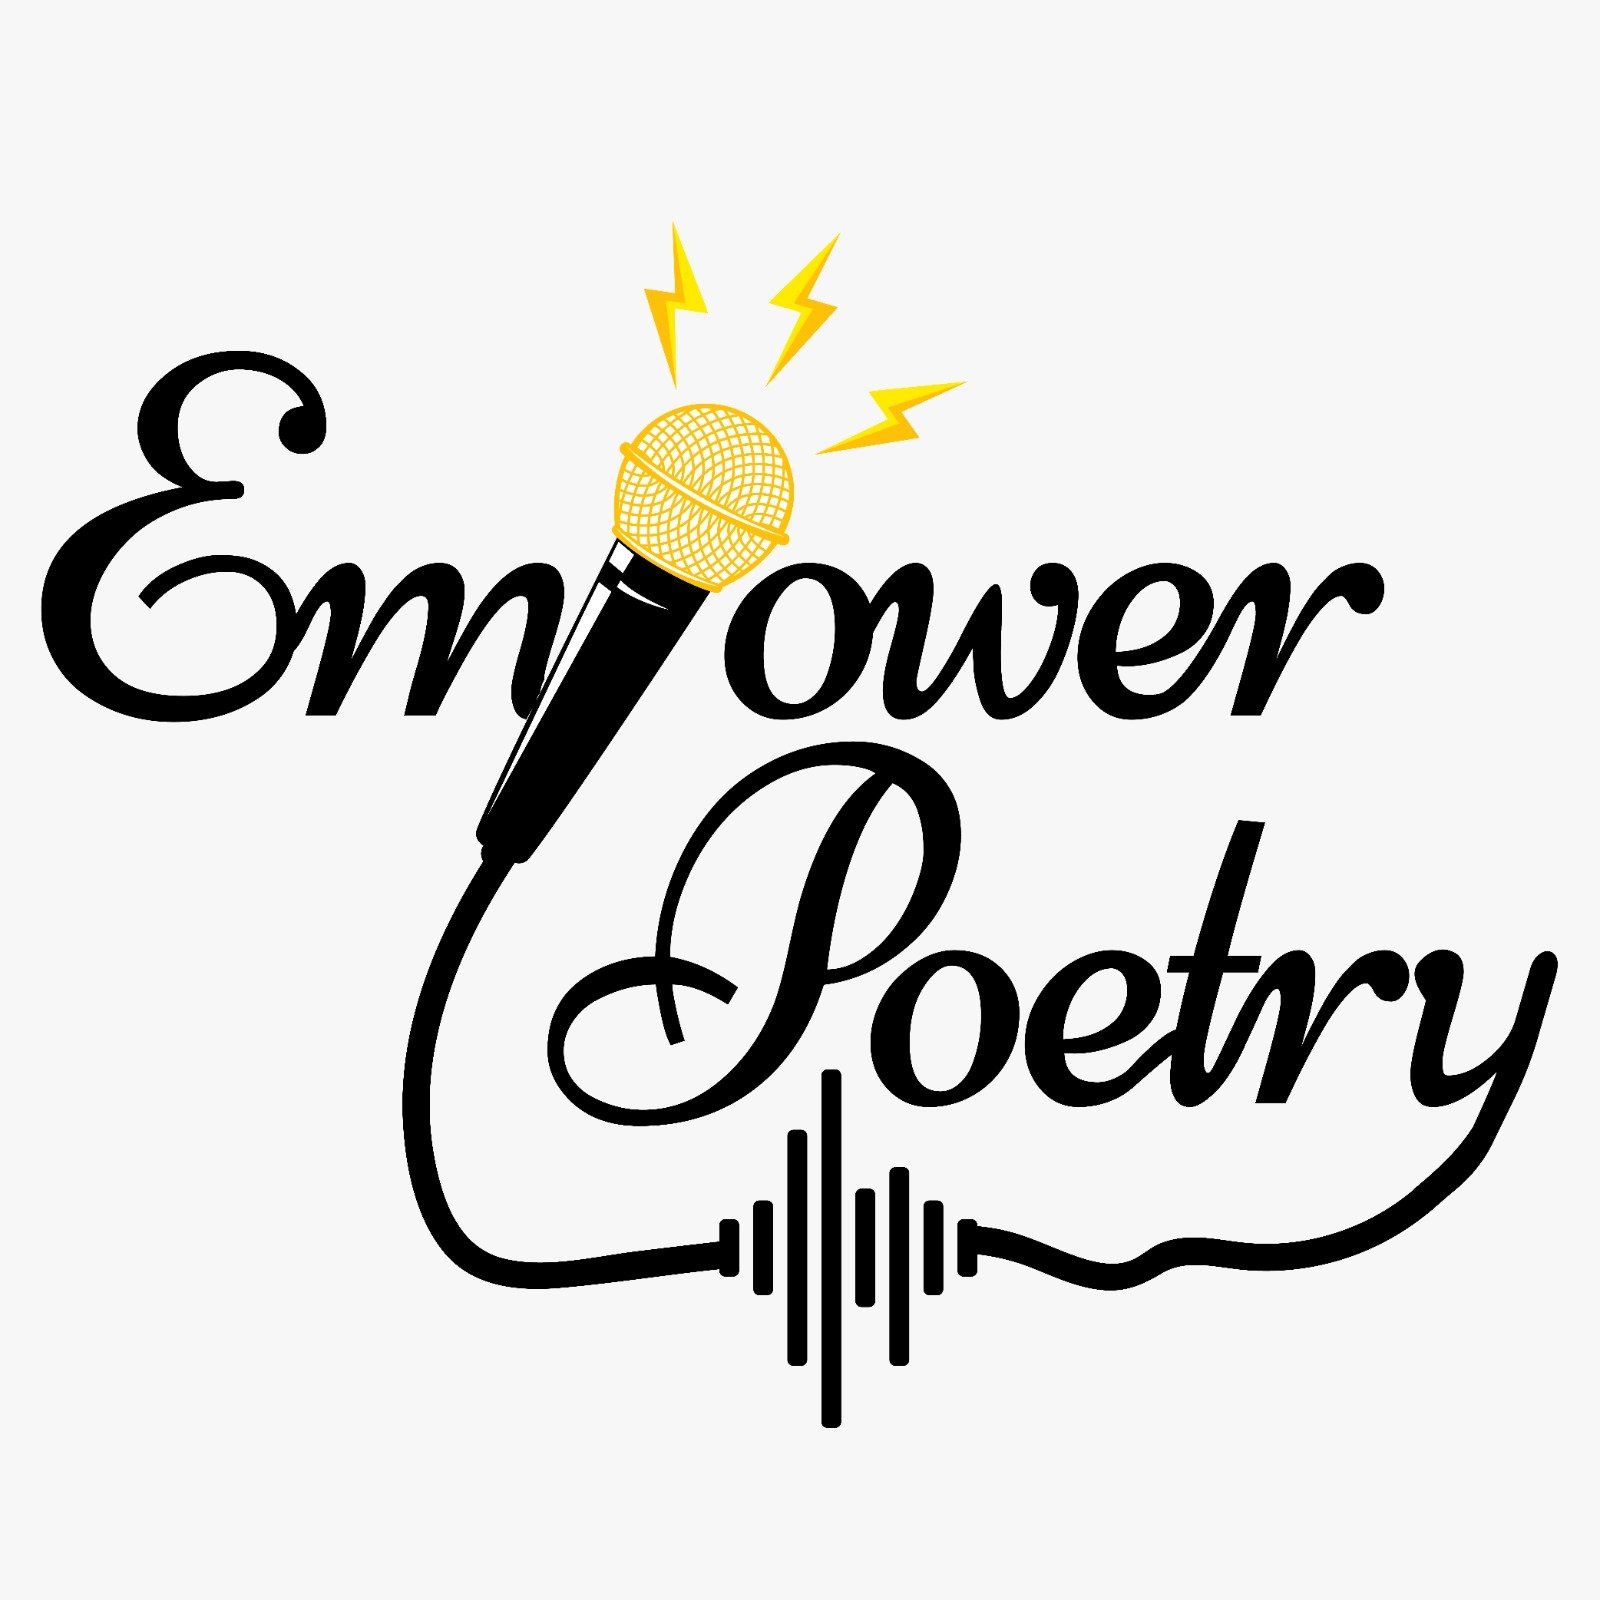 spoken word poetry clipart